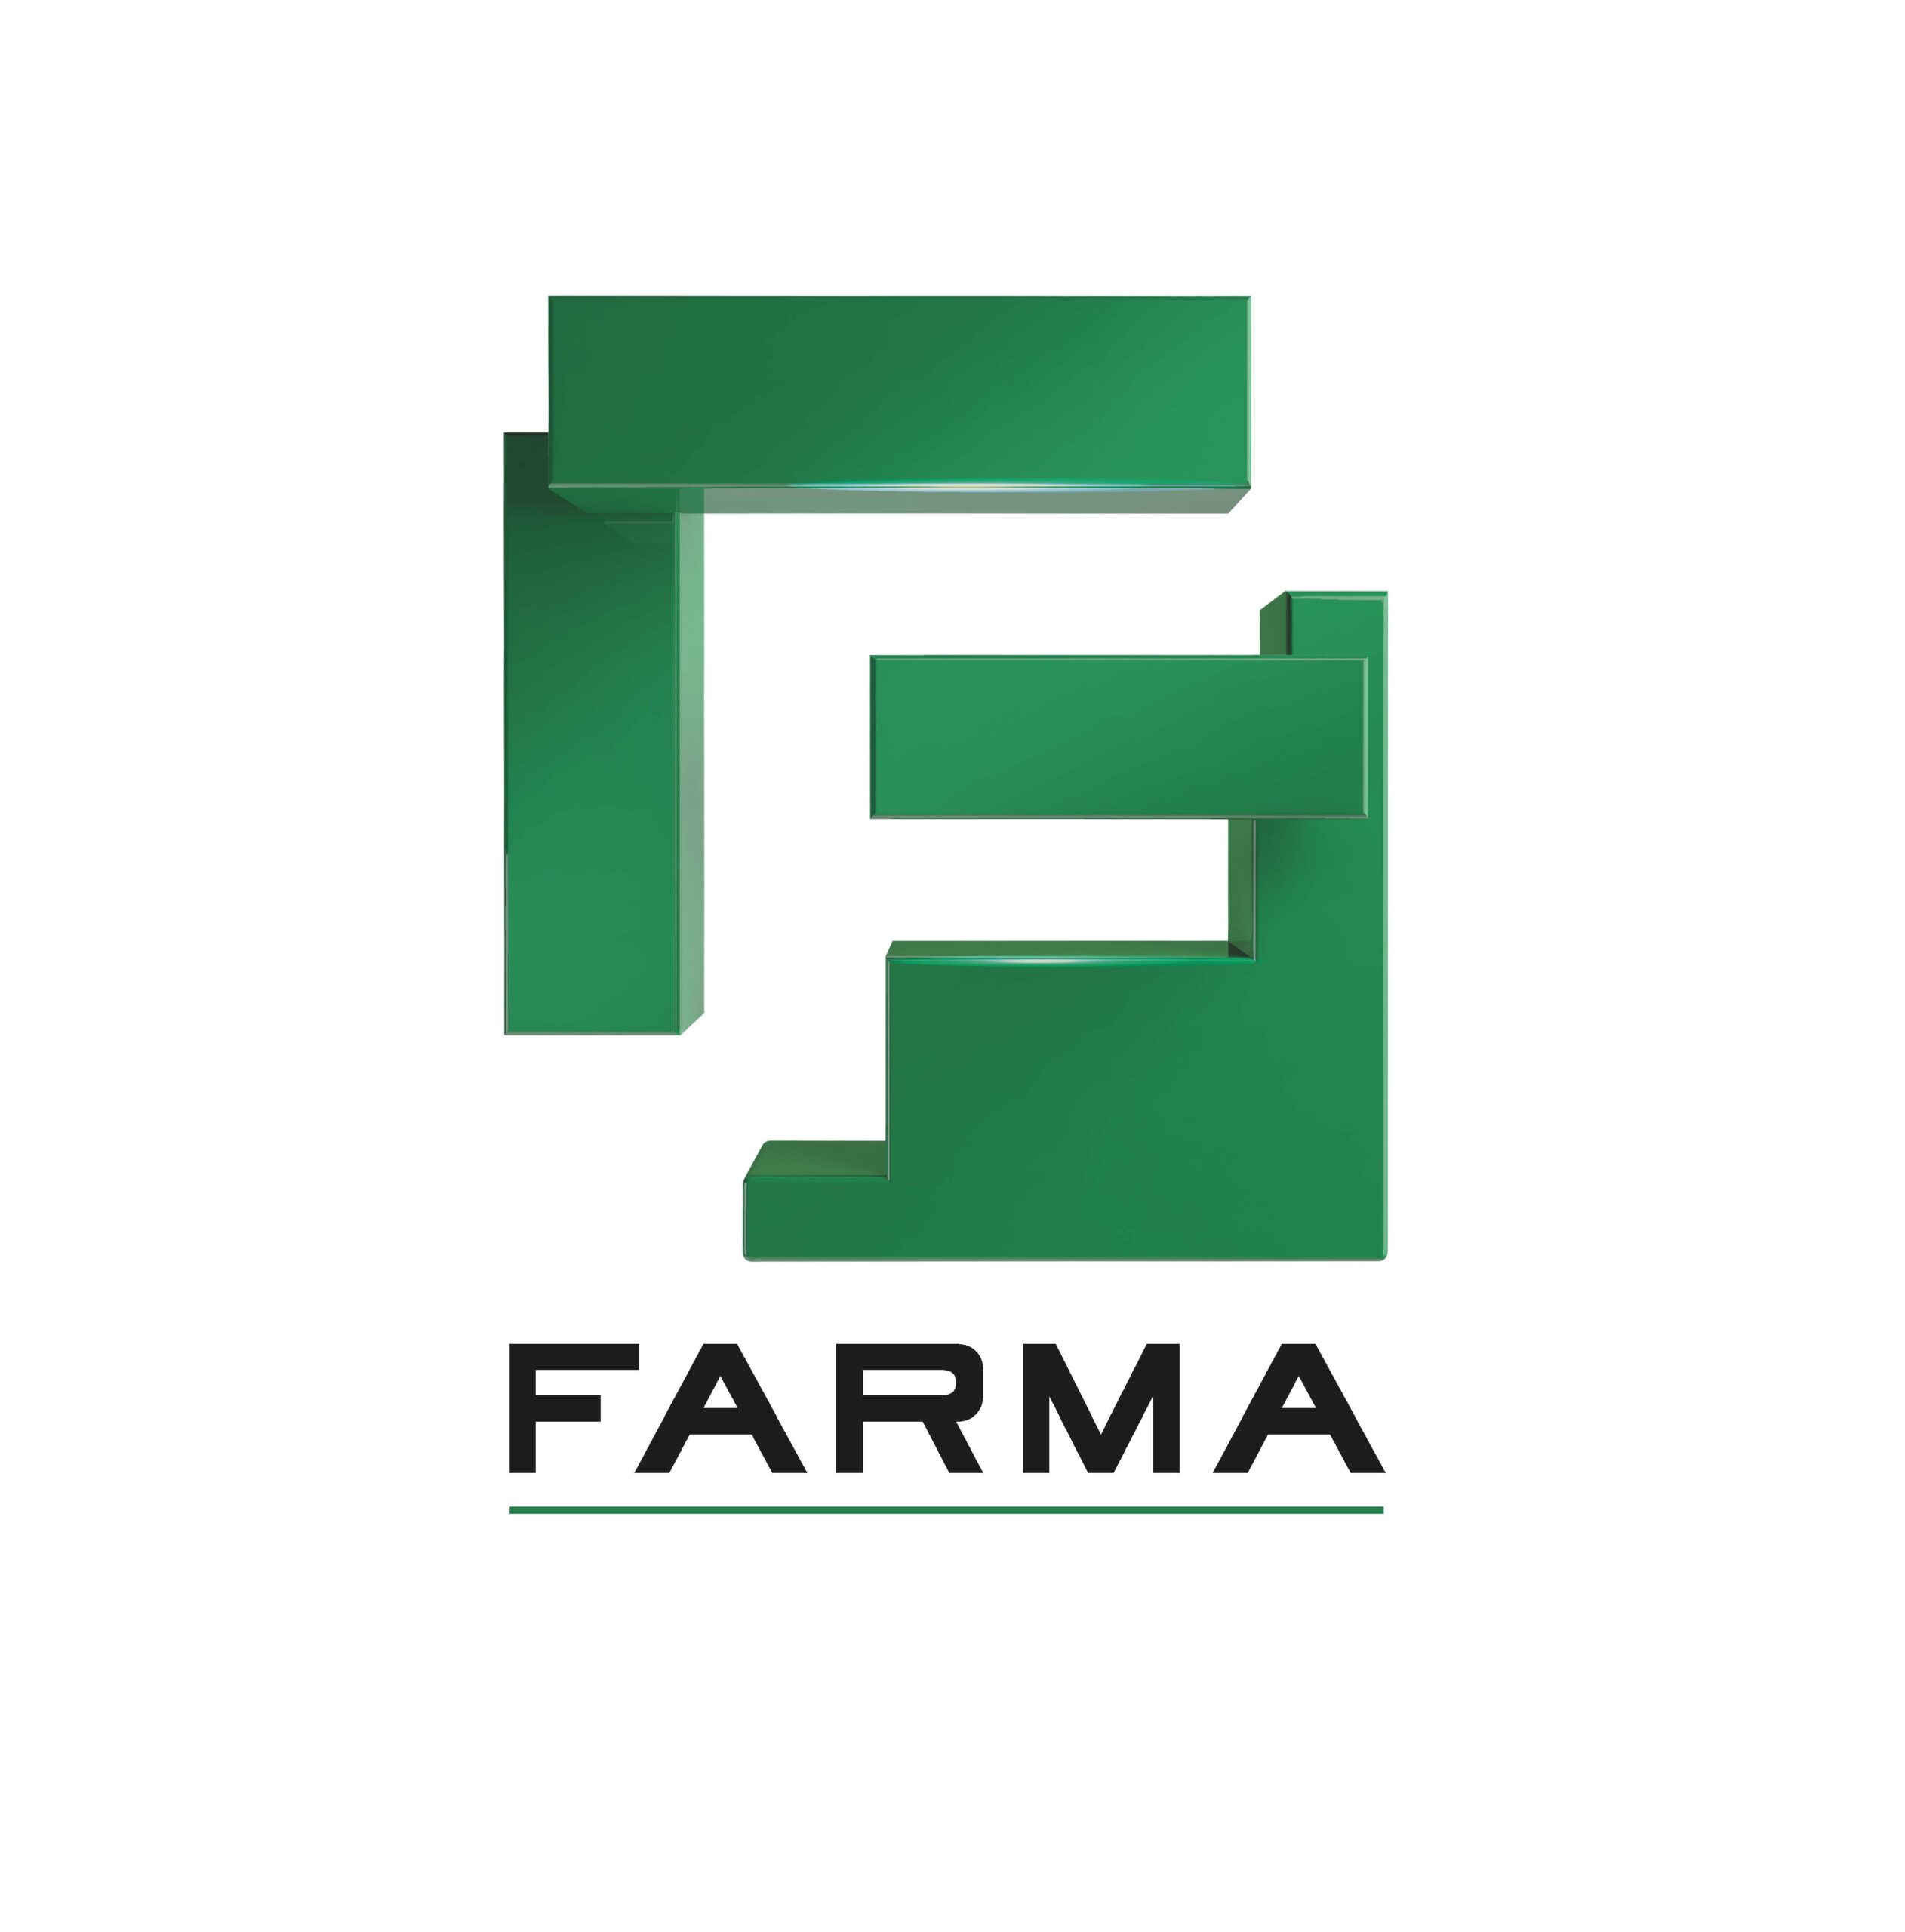 Laboratorios Farma incorpora nuevas y excelentes marcas a su portafolio